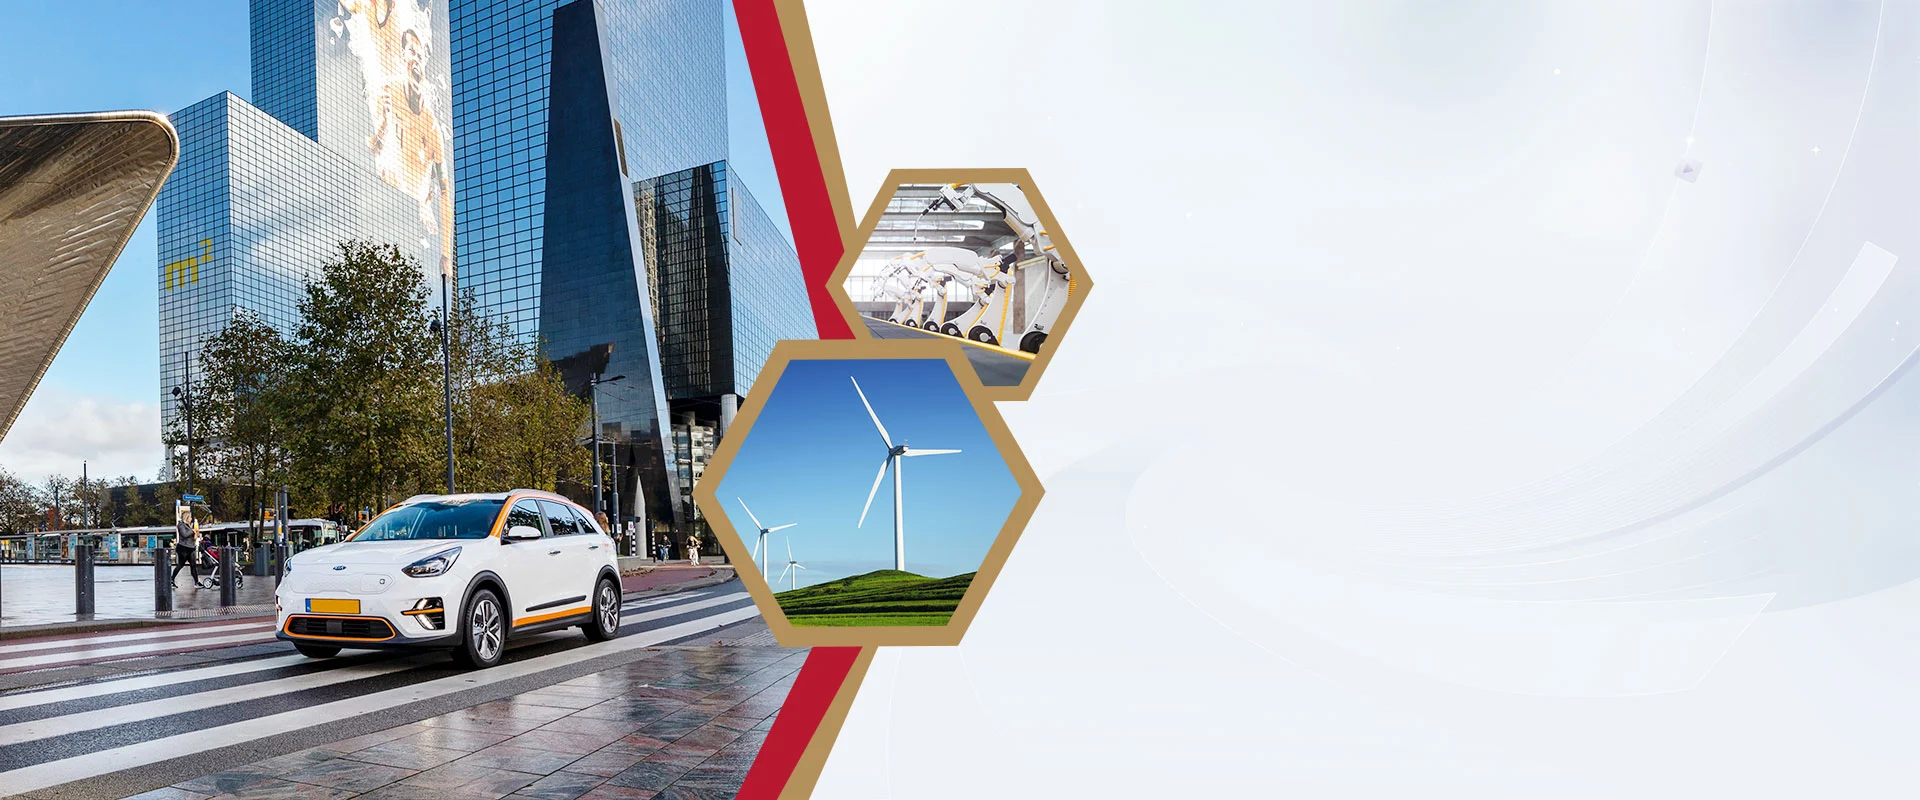 Industrias energizantes, desde automóviles eléctricos hasta turbinas eólicas, con nuestros imanes NdFeB personalizados 